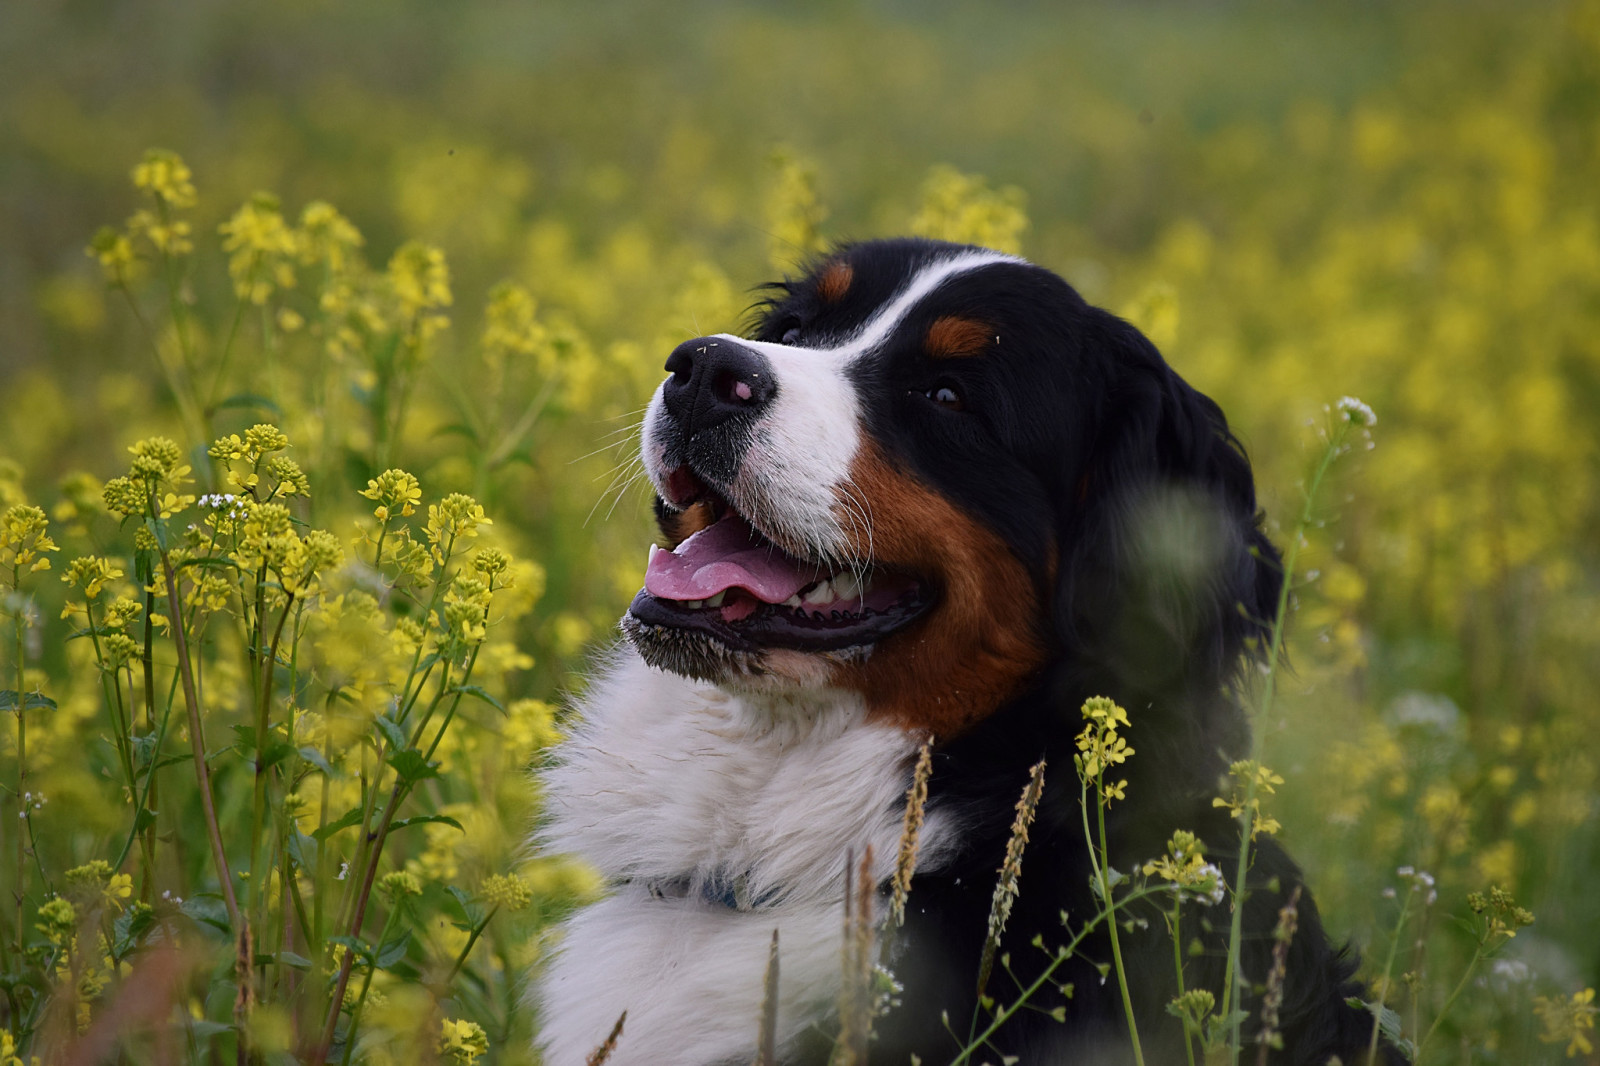 หมา, ใบหน้า, ดอกไม้, ความปิติยินดี, สุนัขภูเขาเบอร์นีส